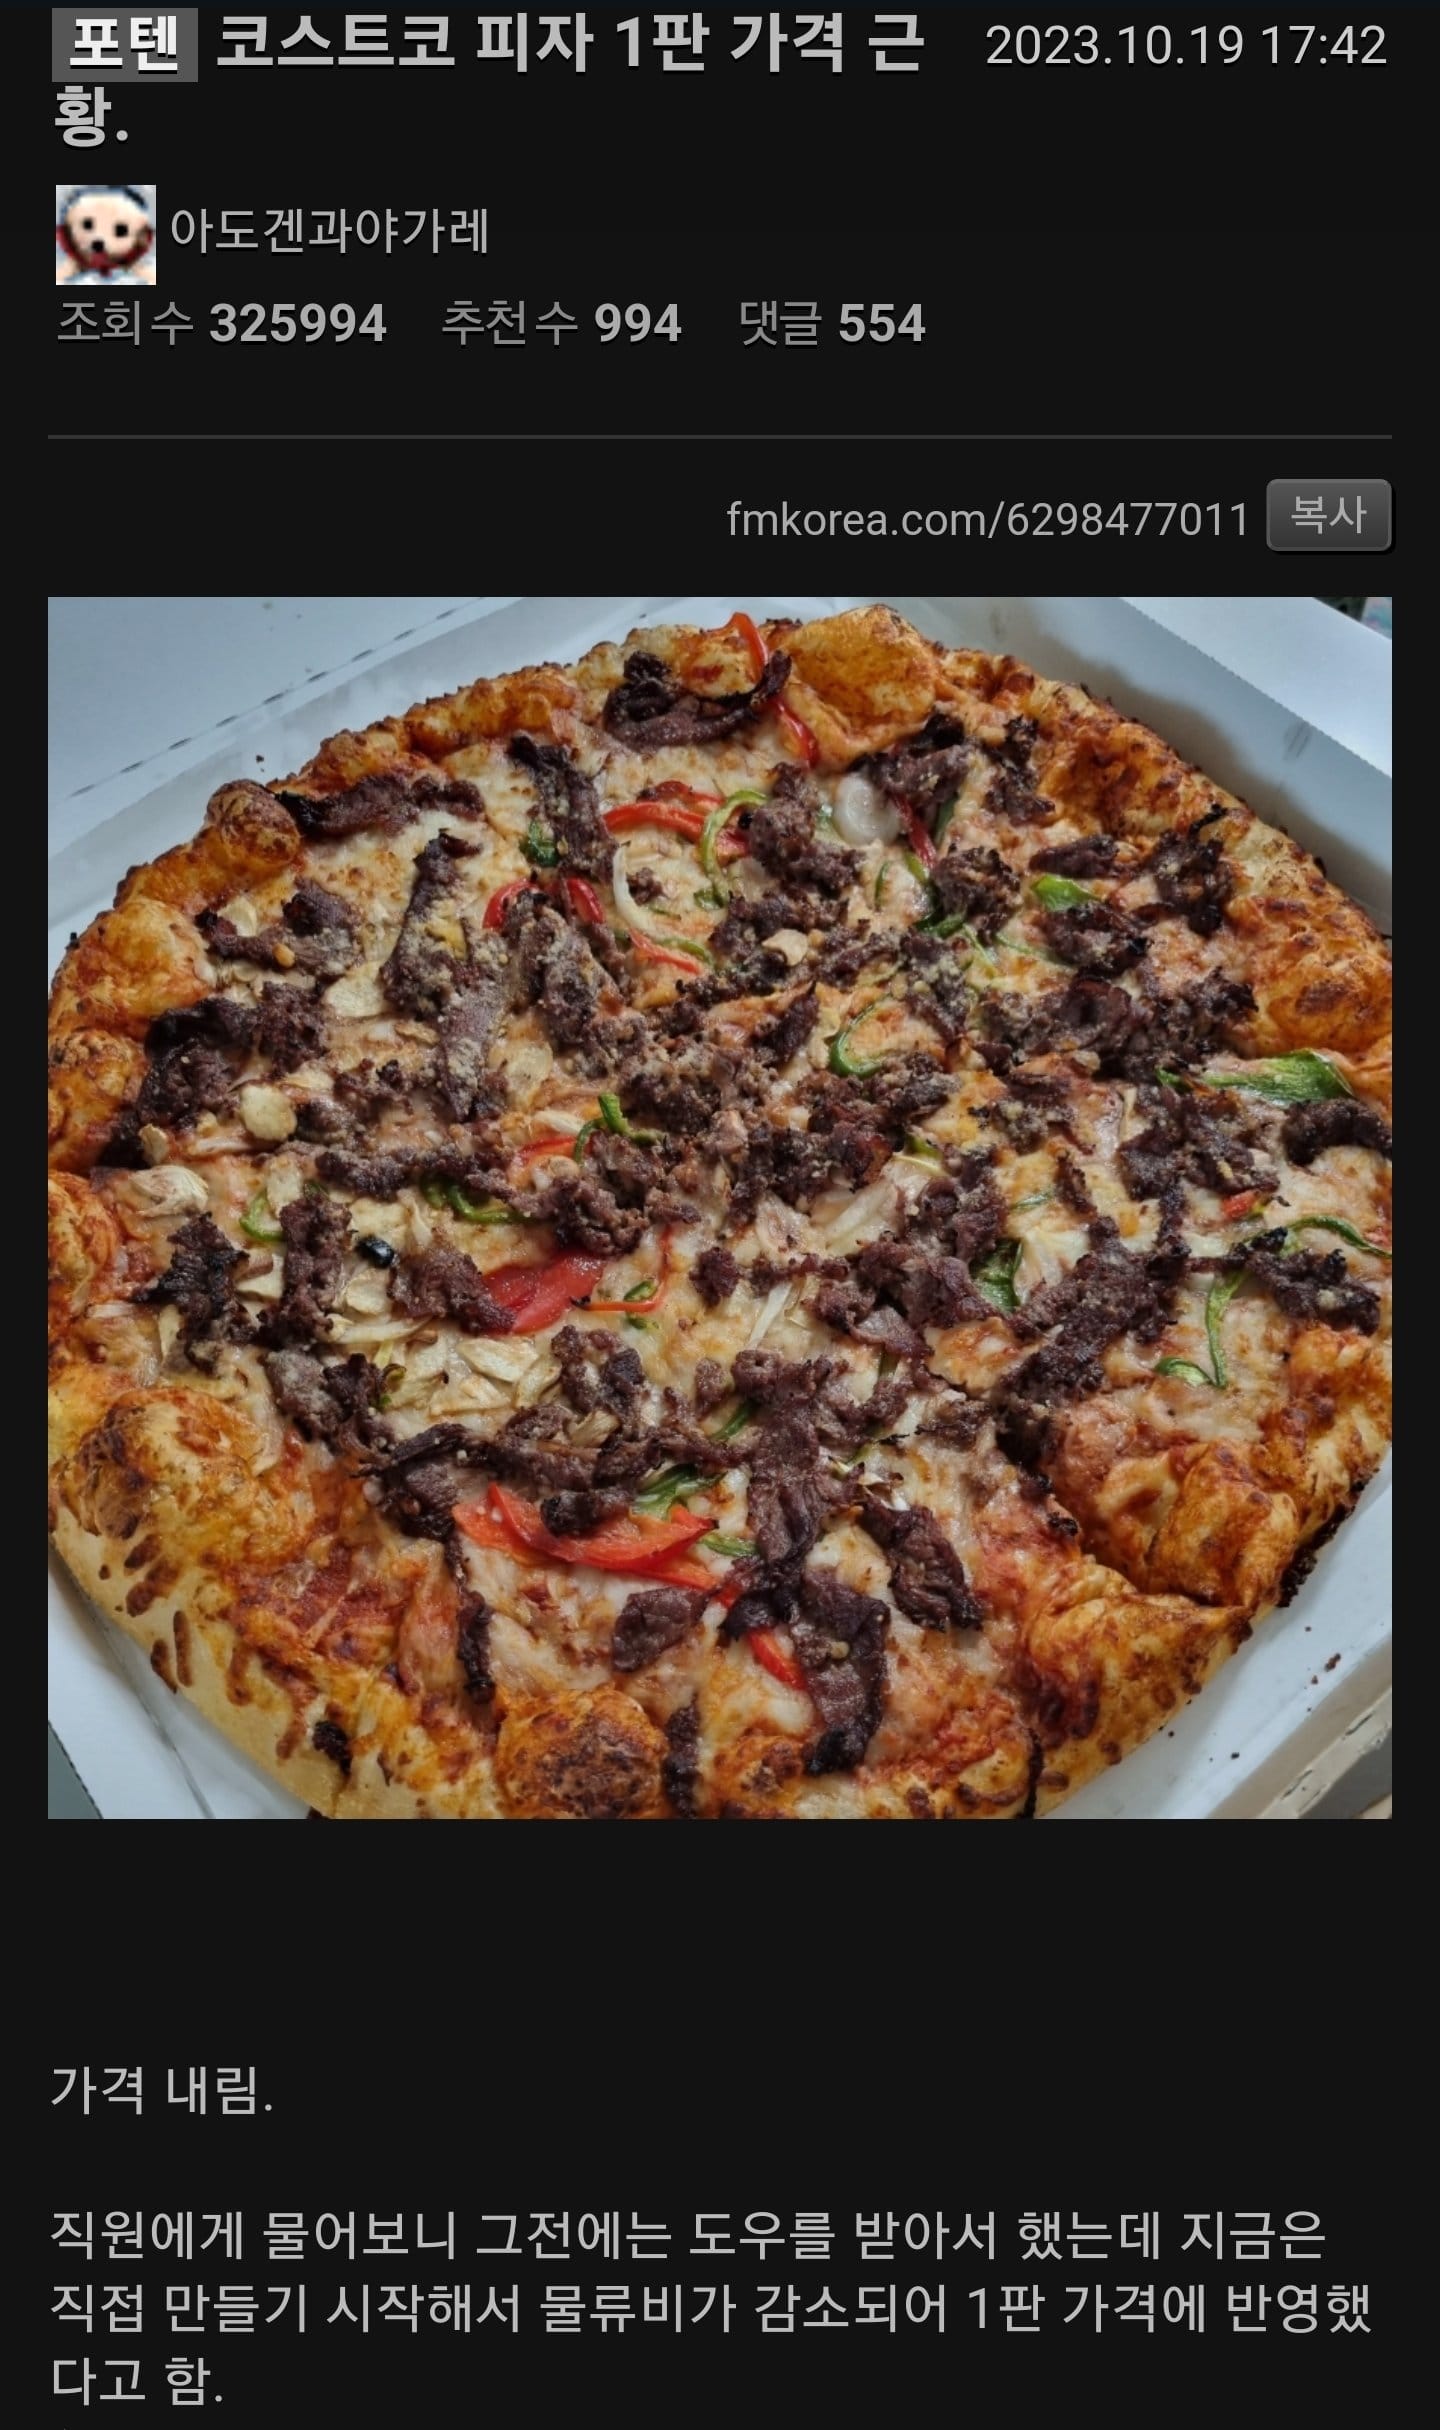 코스트코 피자 가격 인하.jpg